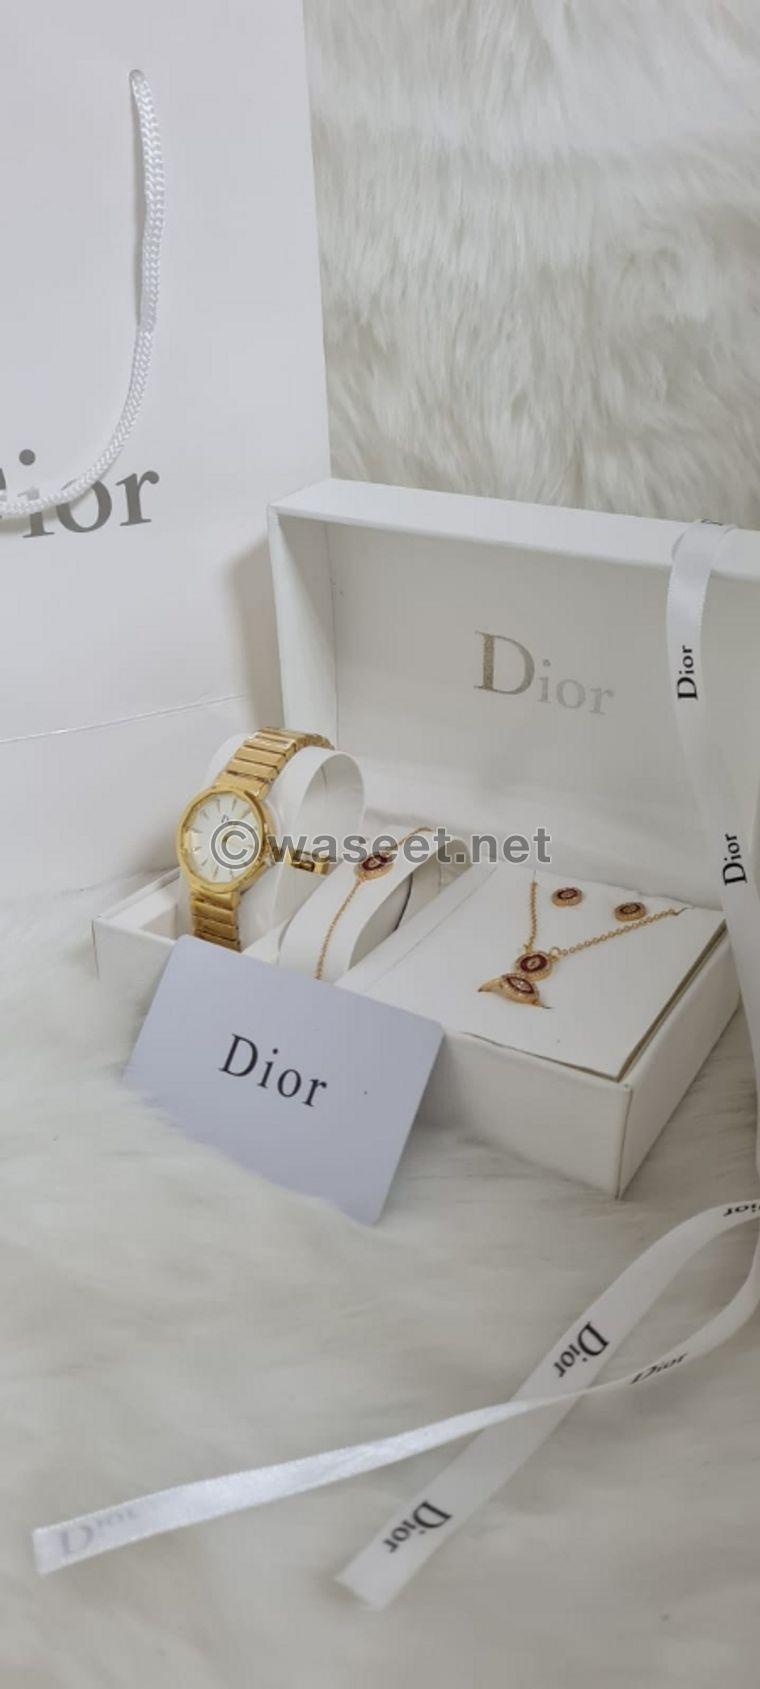 Dior women's sets 0